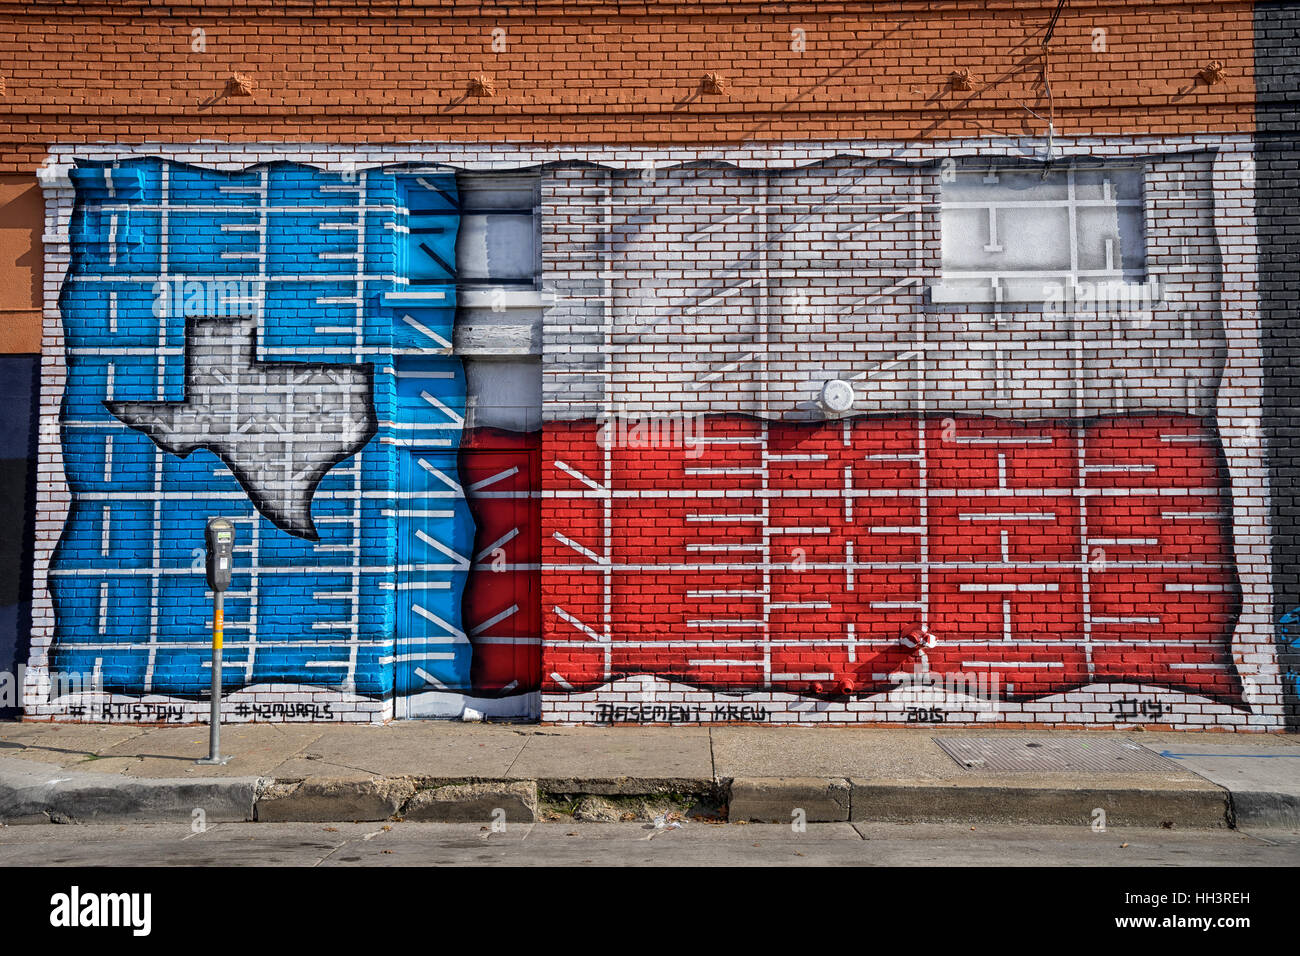 Dicembre 25, 2016, Dallas, Texas: il Deep Ellum area della città è conosciuta per la vasta arti graffiti dipinti sui muri Foto Stock